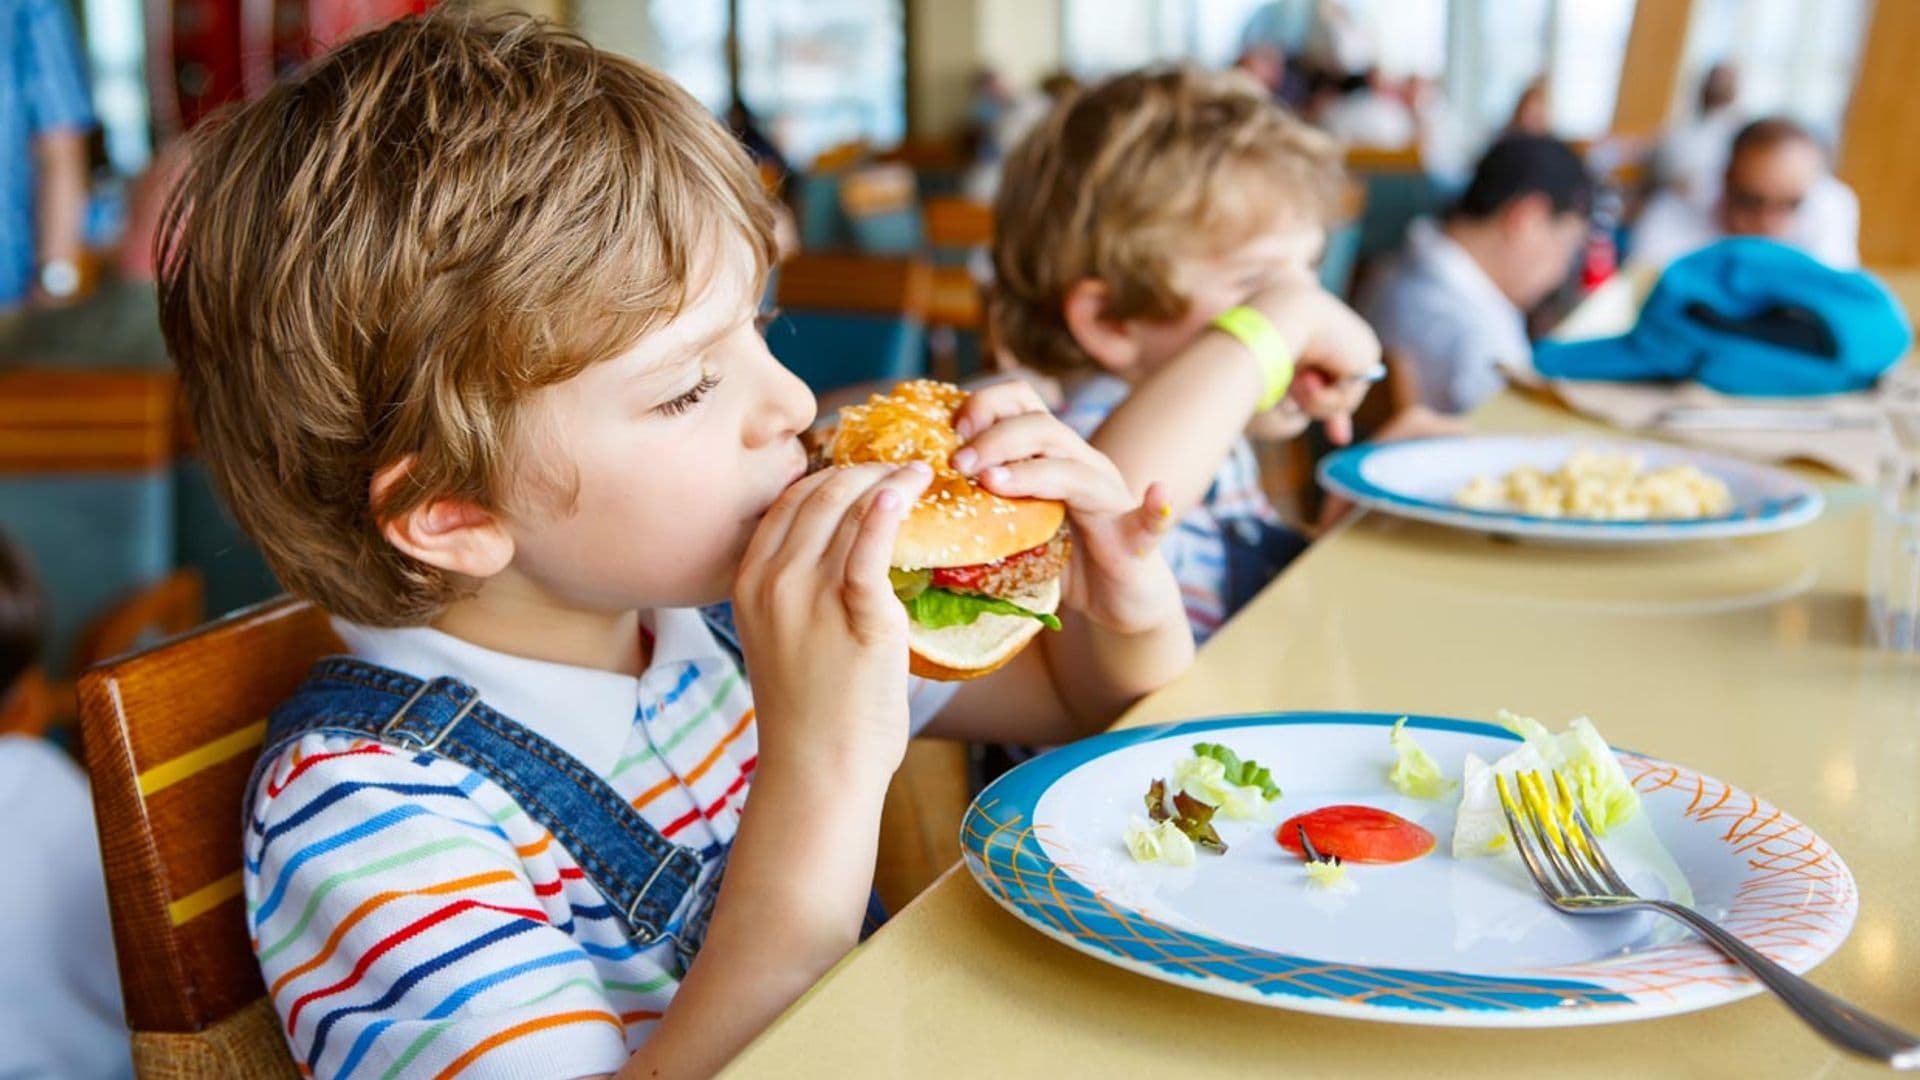 Donald Trump da la luz verde para que la comida basura vuelva a los comedores escolares